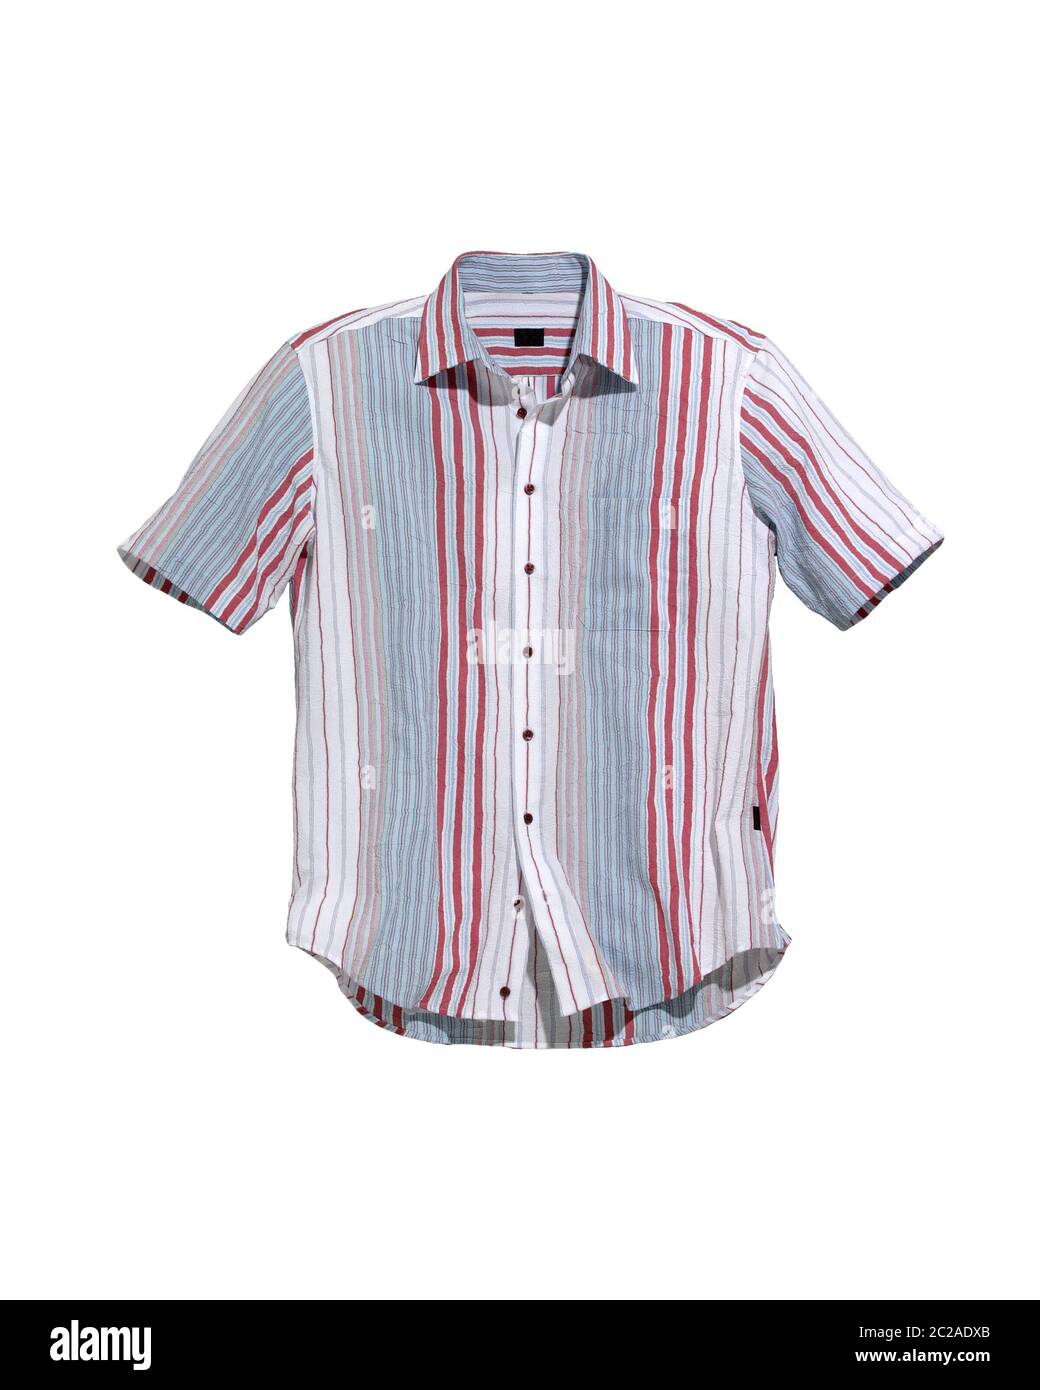 short sleeve shirt striped isolated on white Stock Photo